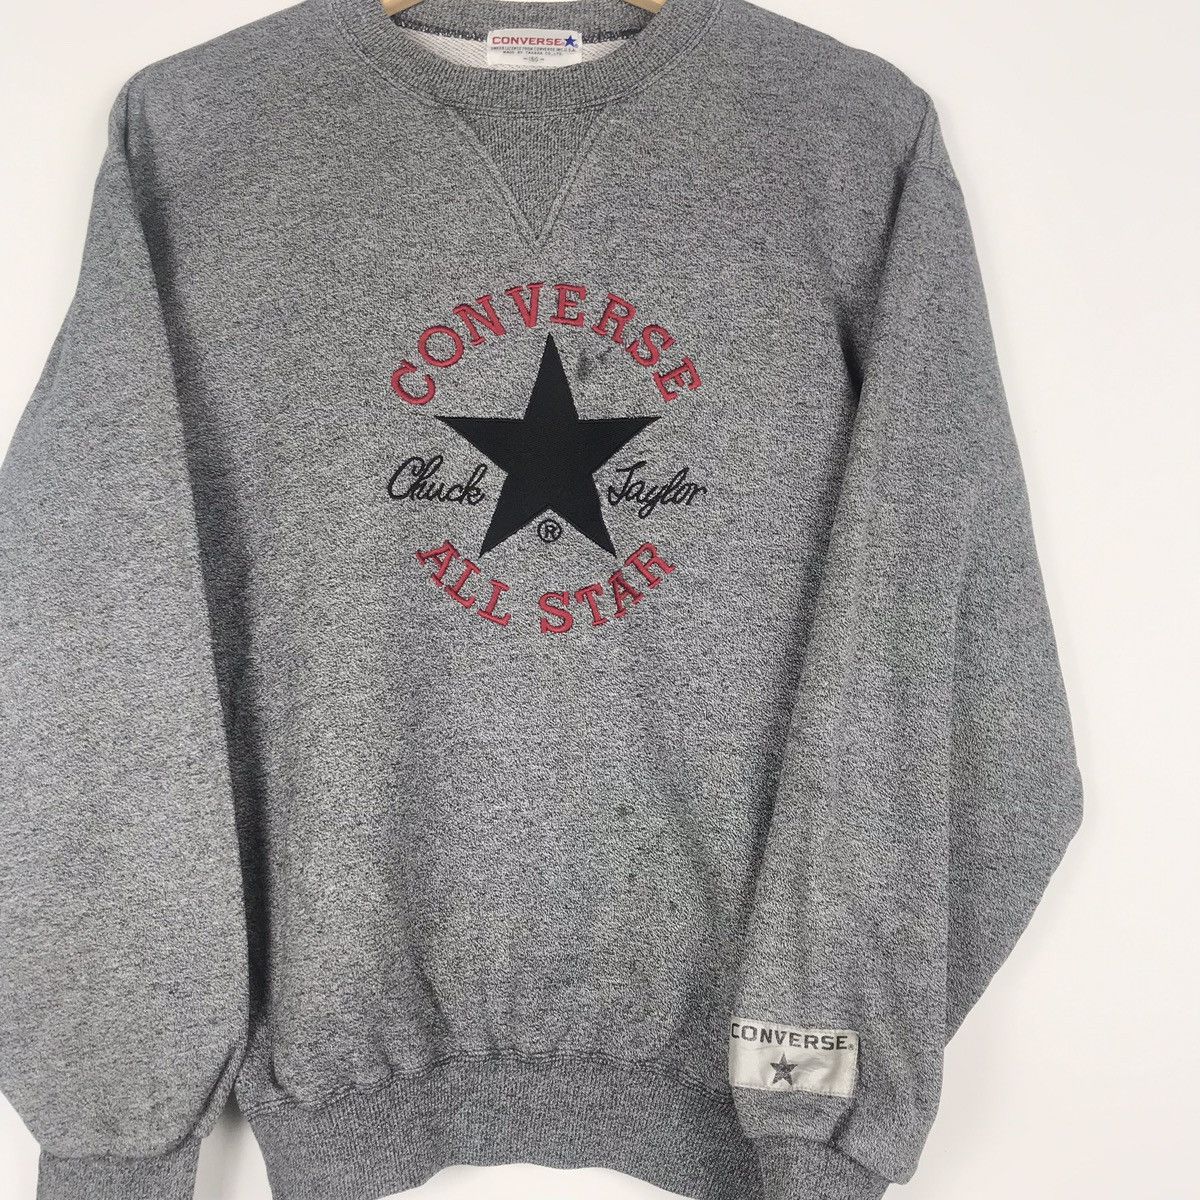 converse vintage sweatshirt - 2